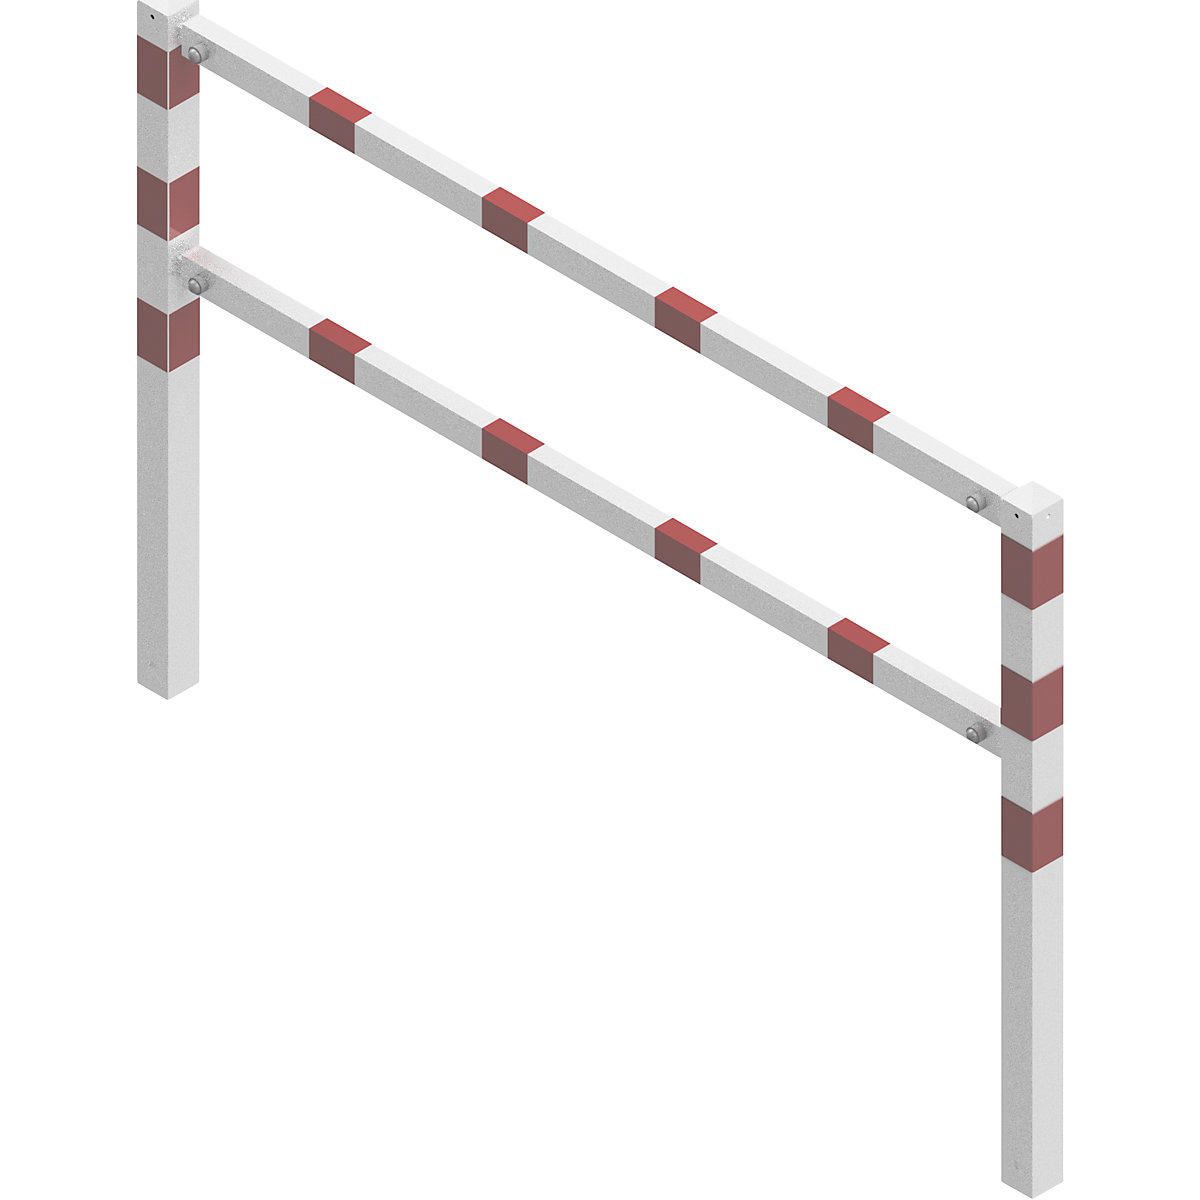 Barrière à visser, avec barre supérieure et au niveau des genoux, blanc avec bandes réfléchissantes rouges, largeur 2000 mm-5